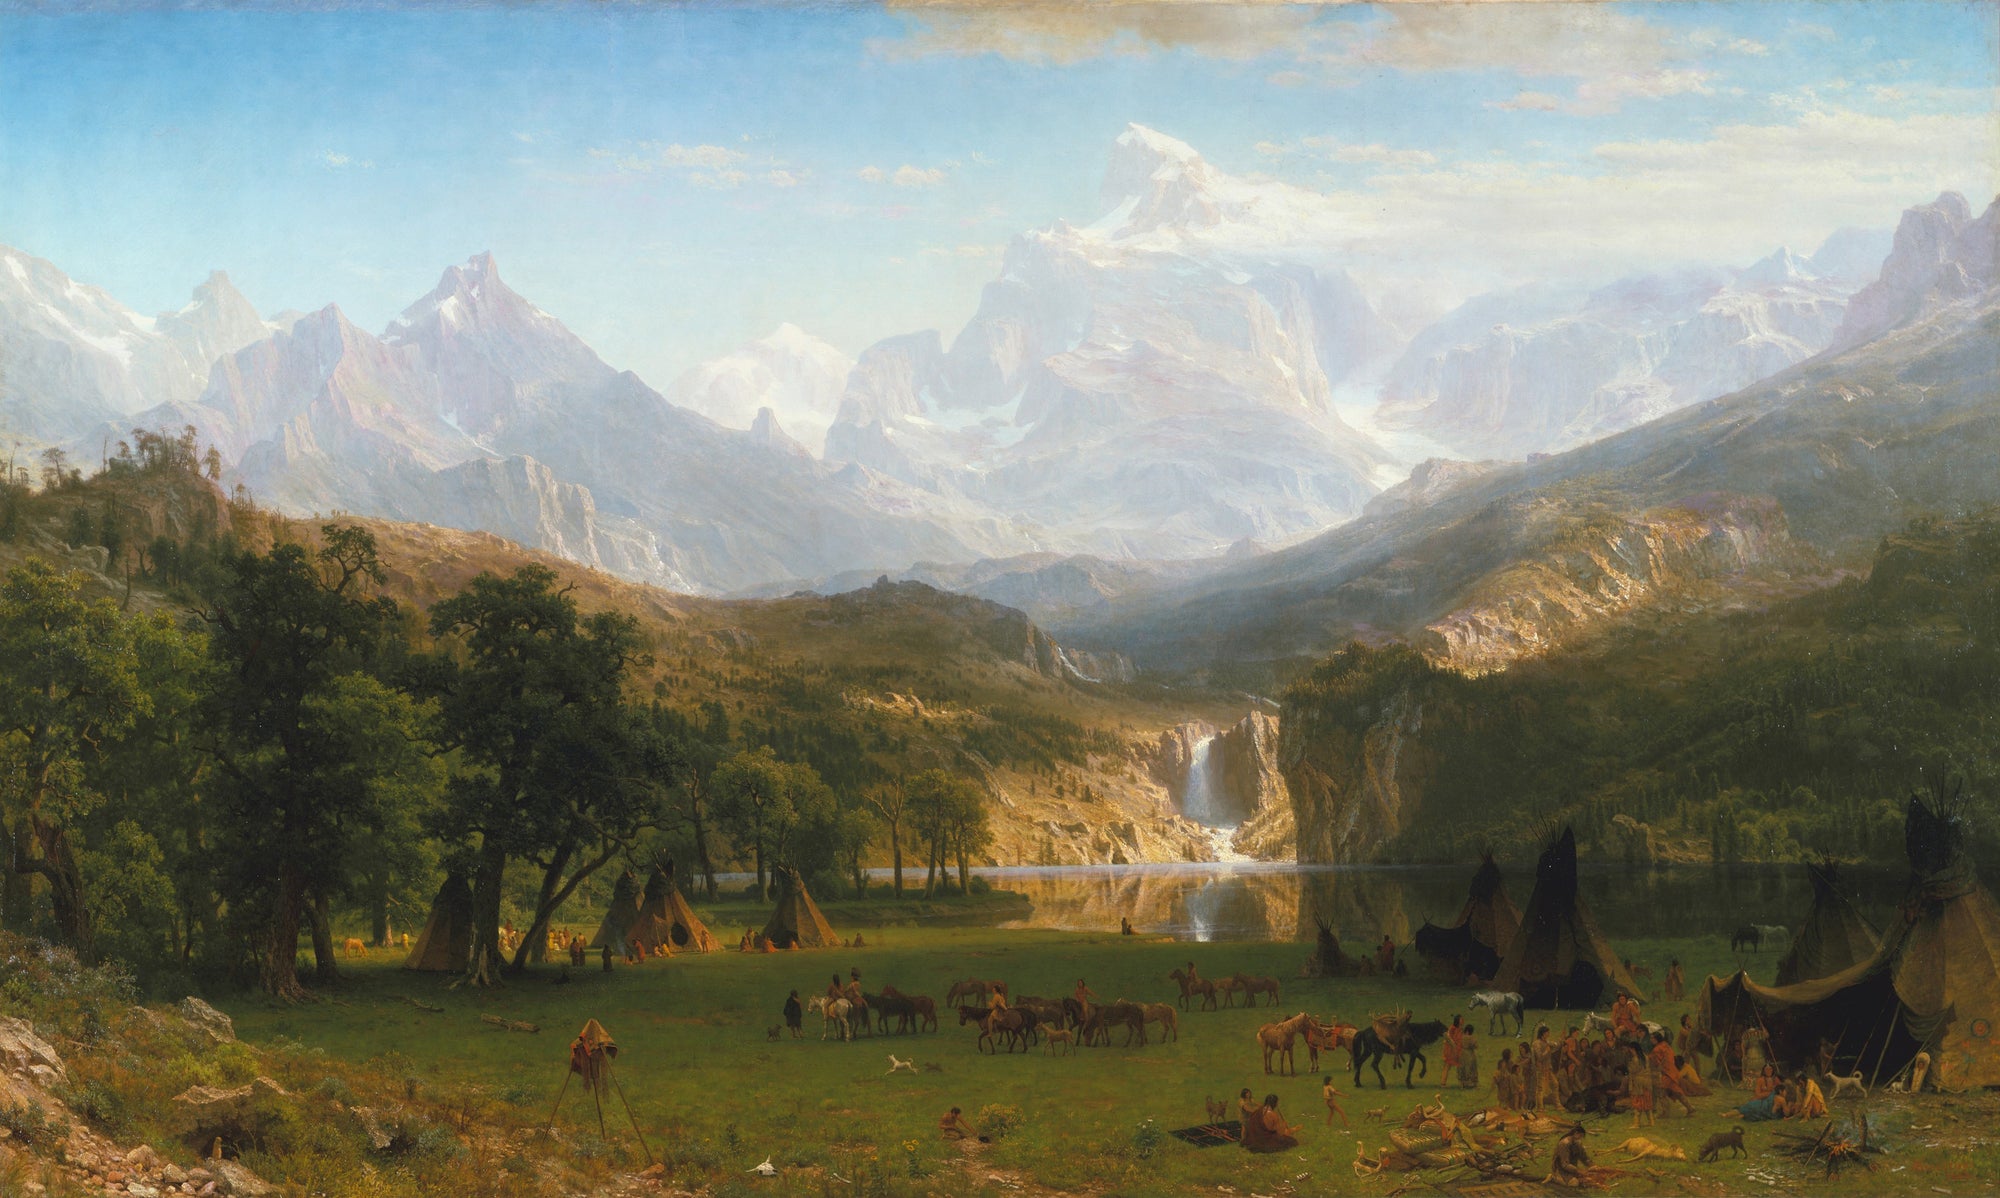 Les Montagnes Rocheuses, Lander's Peak - Albert Bierstadt